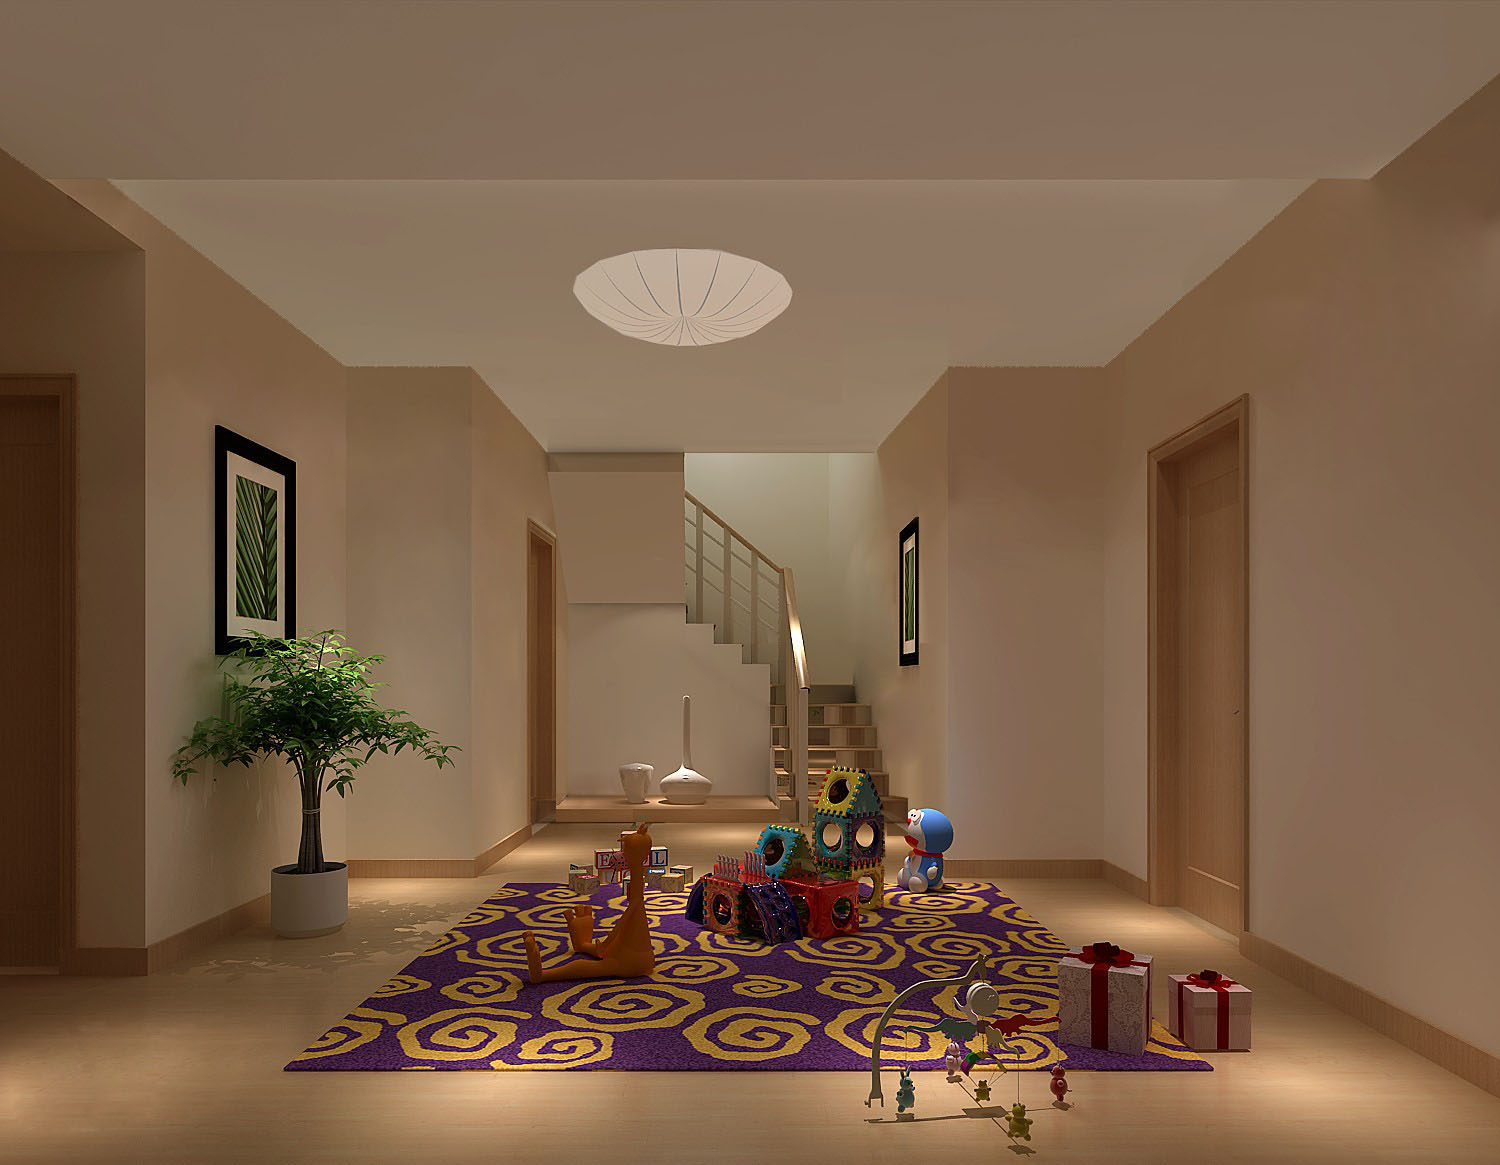 复式公寓 白领 小资 复古 简约 欧式 别墅 客厅图片来自重庆高度国际装饰工程有限公司在中铁花语城-简欧的分享